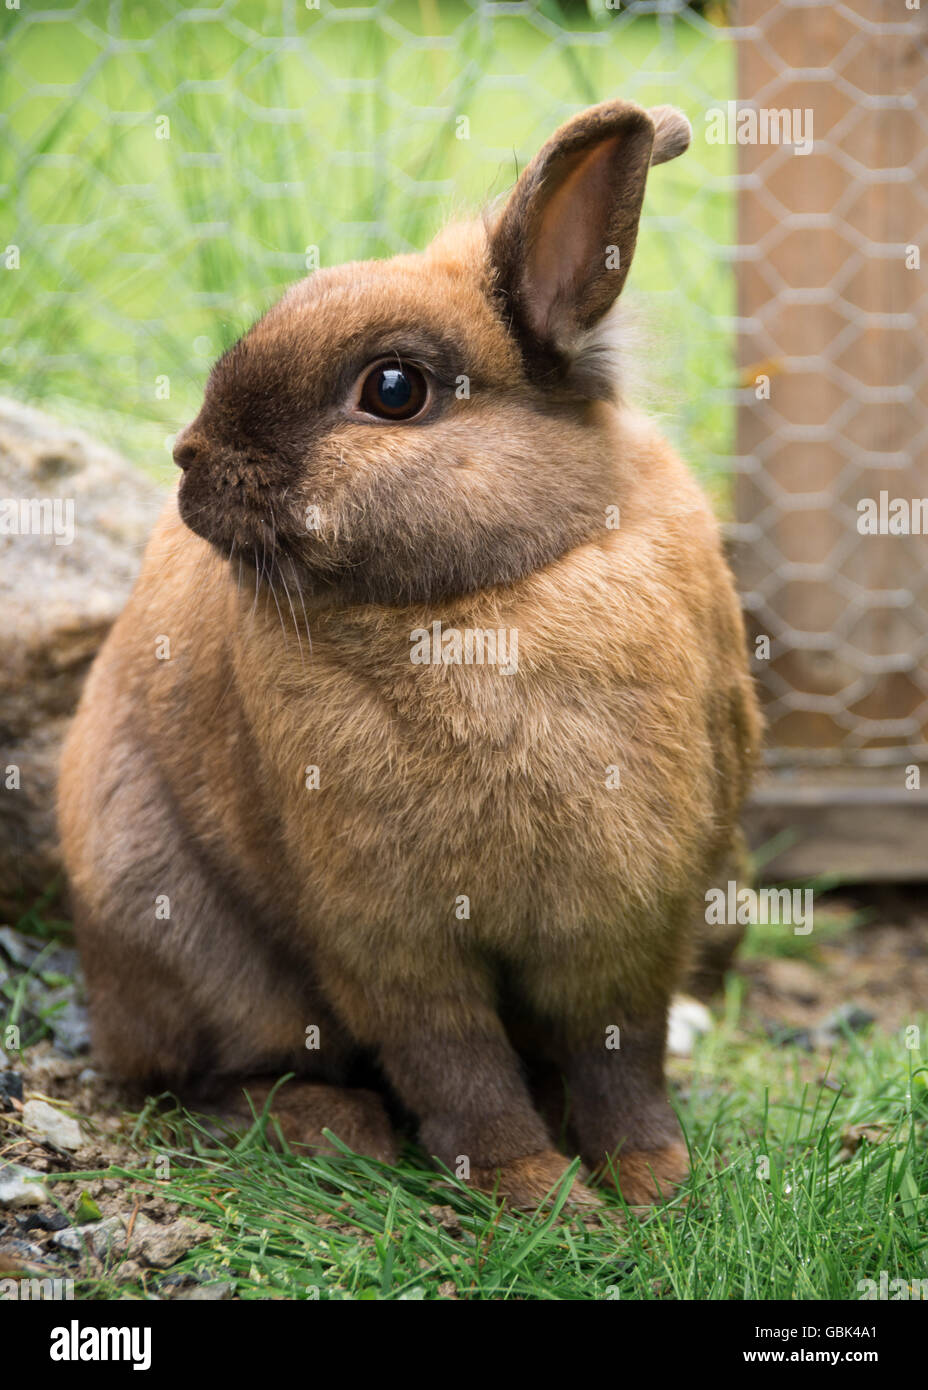 netherland dwarf lionhead rabbit